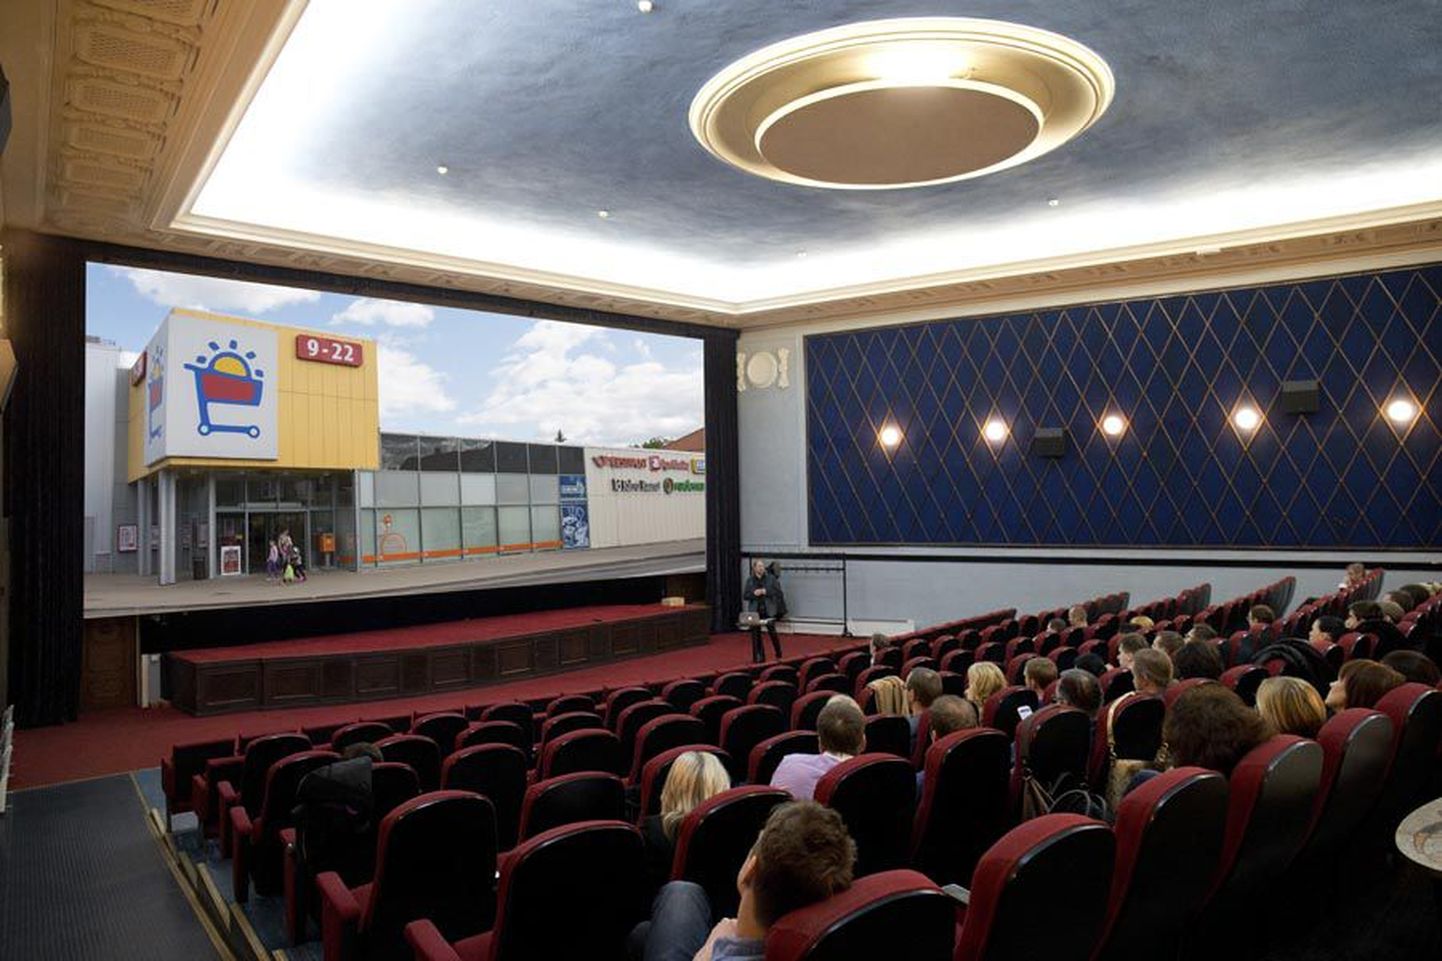 Kes saab kino? Võidujooksu Viljandisse kino rajamise nimel juhivad Centrum ja Forum Cinemas, kes saavad ehitust alustada juba järgmisel nädalal.